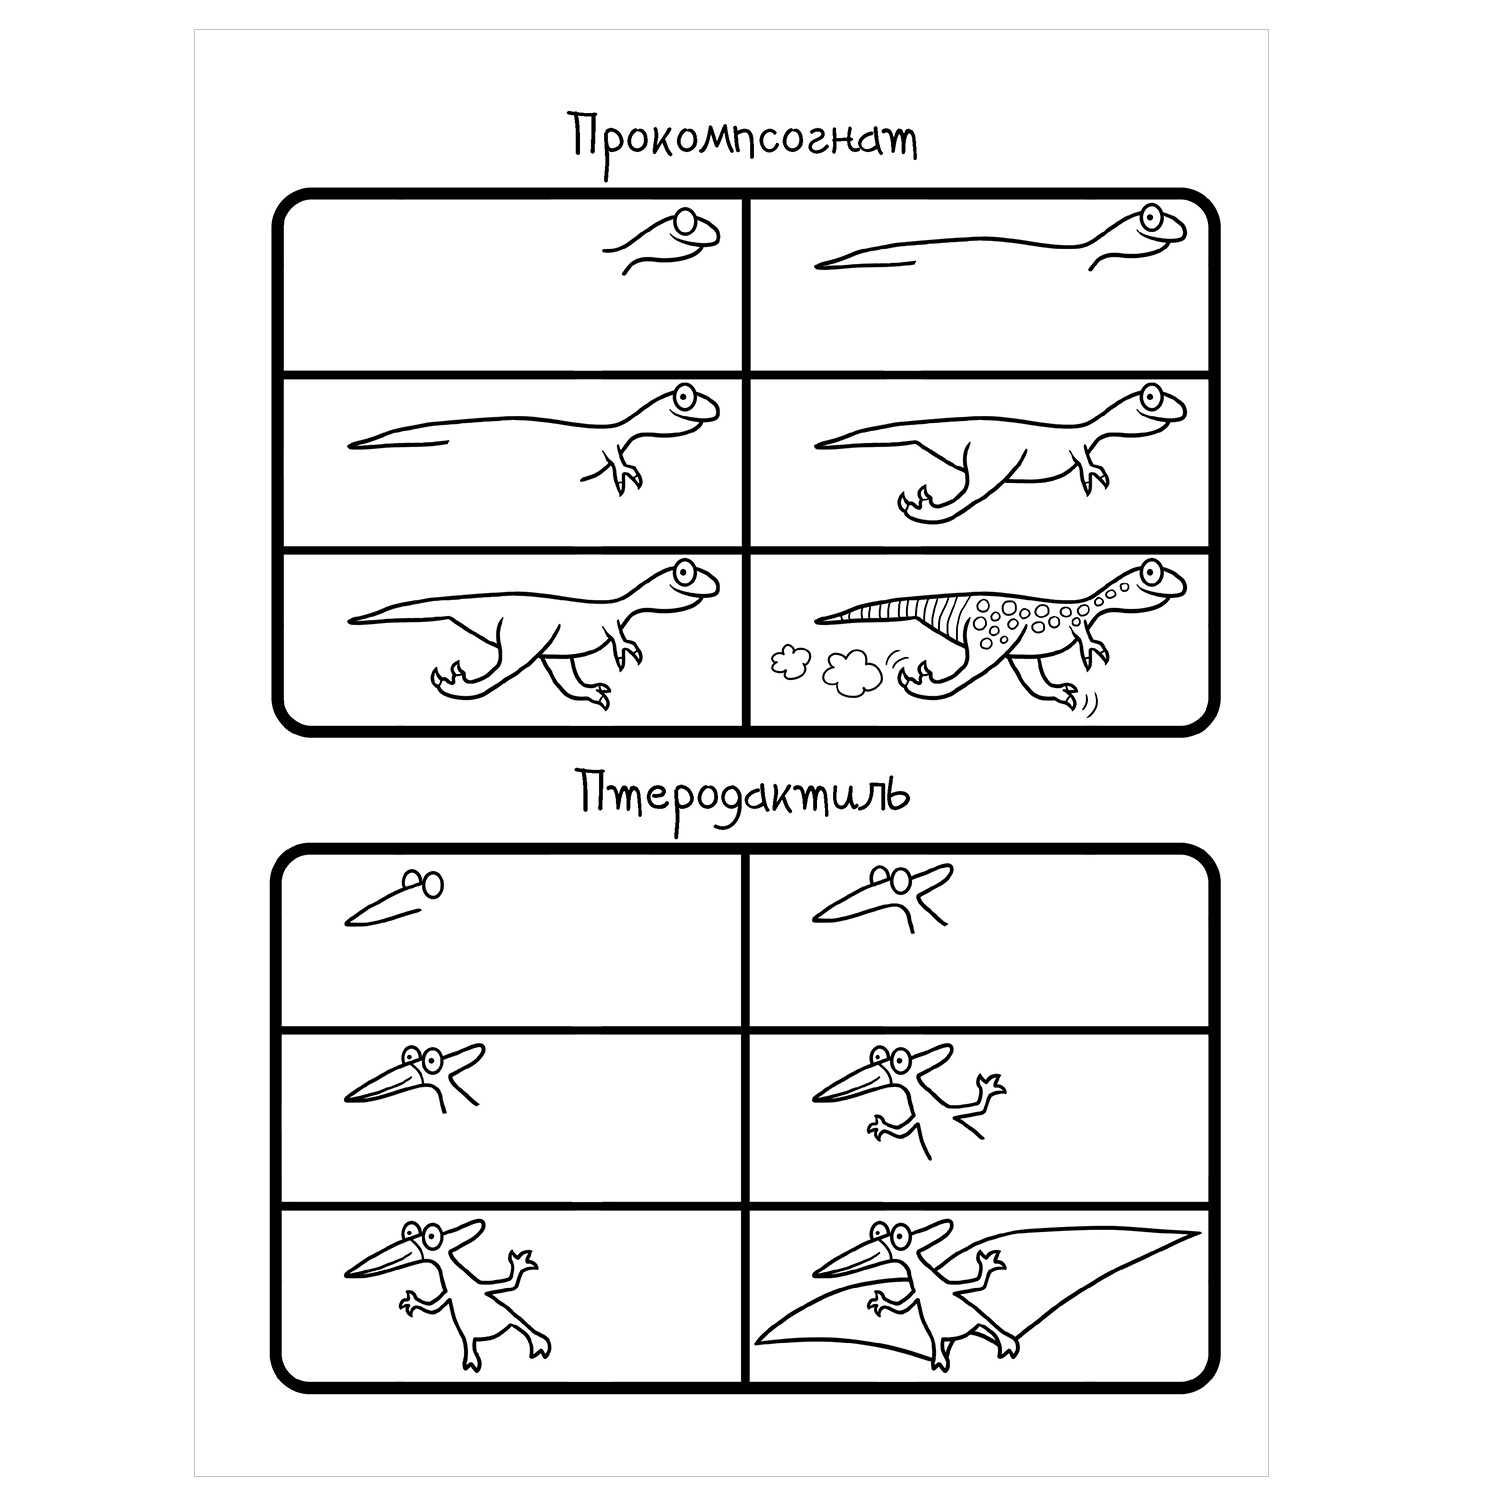 Книга АСТ Как научиться рисовать 101 динозавра - фото 3